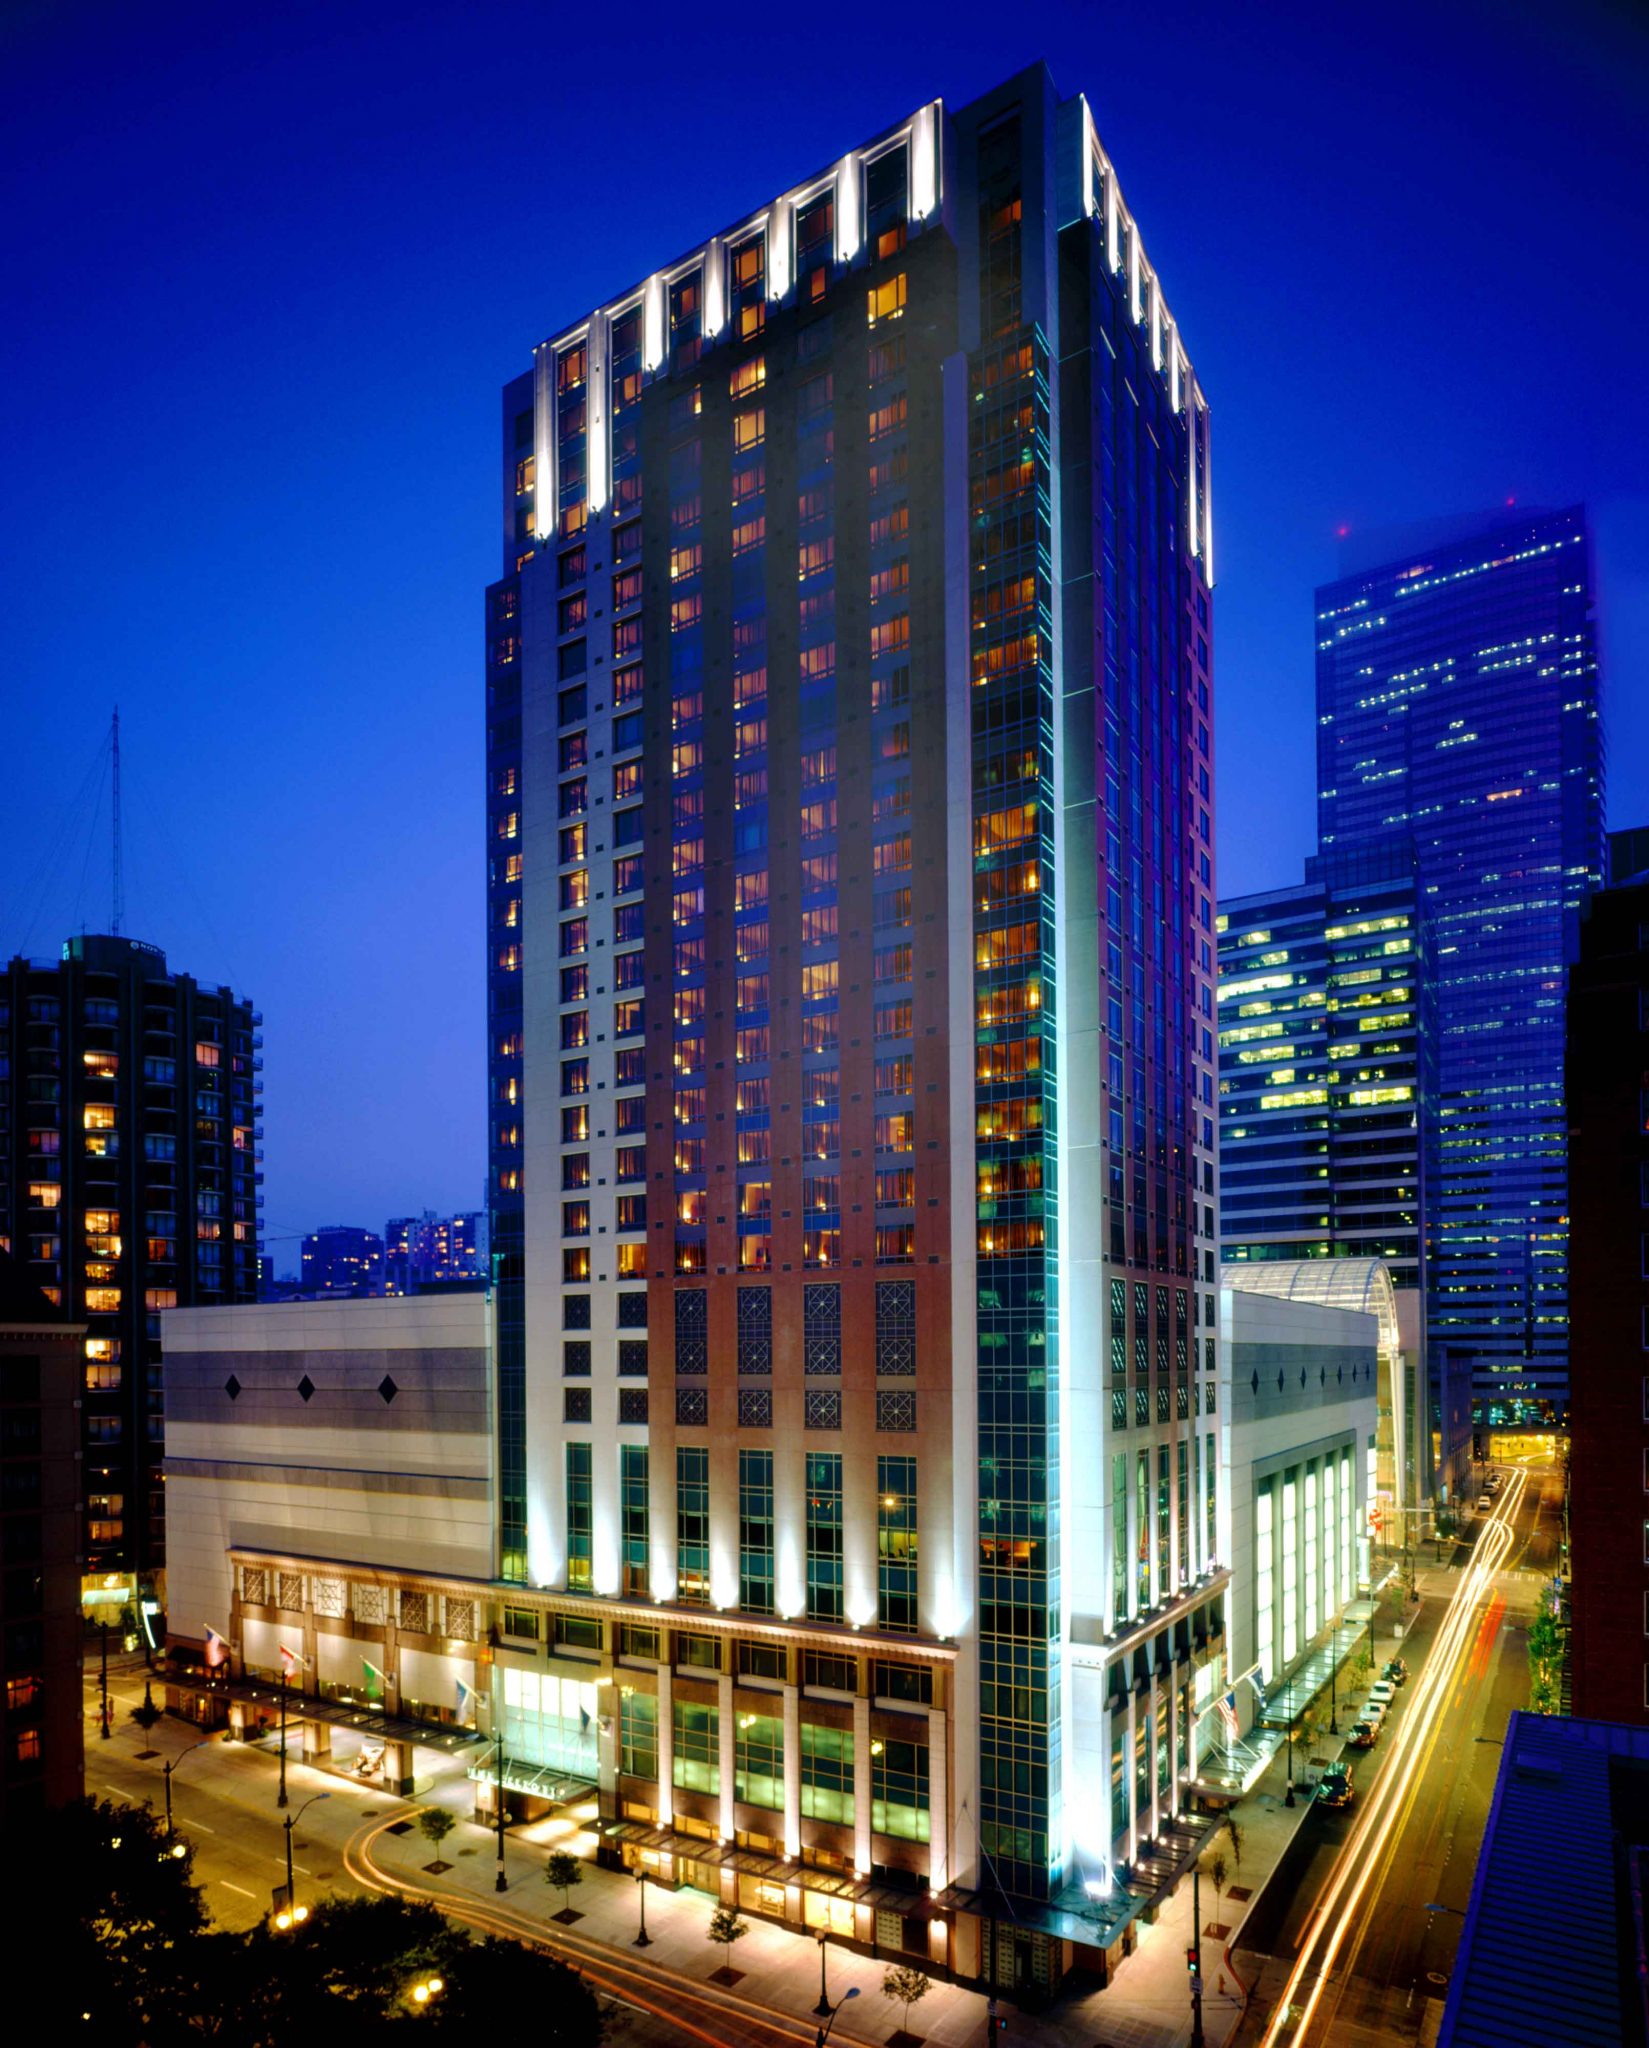 Grand Hyatt Seattle is a gay and lesbian friendly hotel in Seattle.